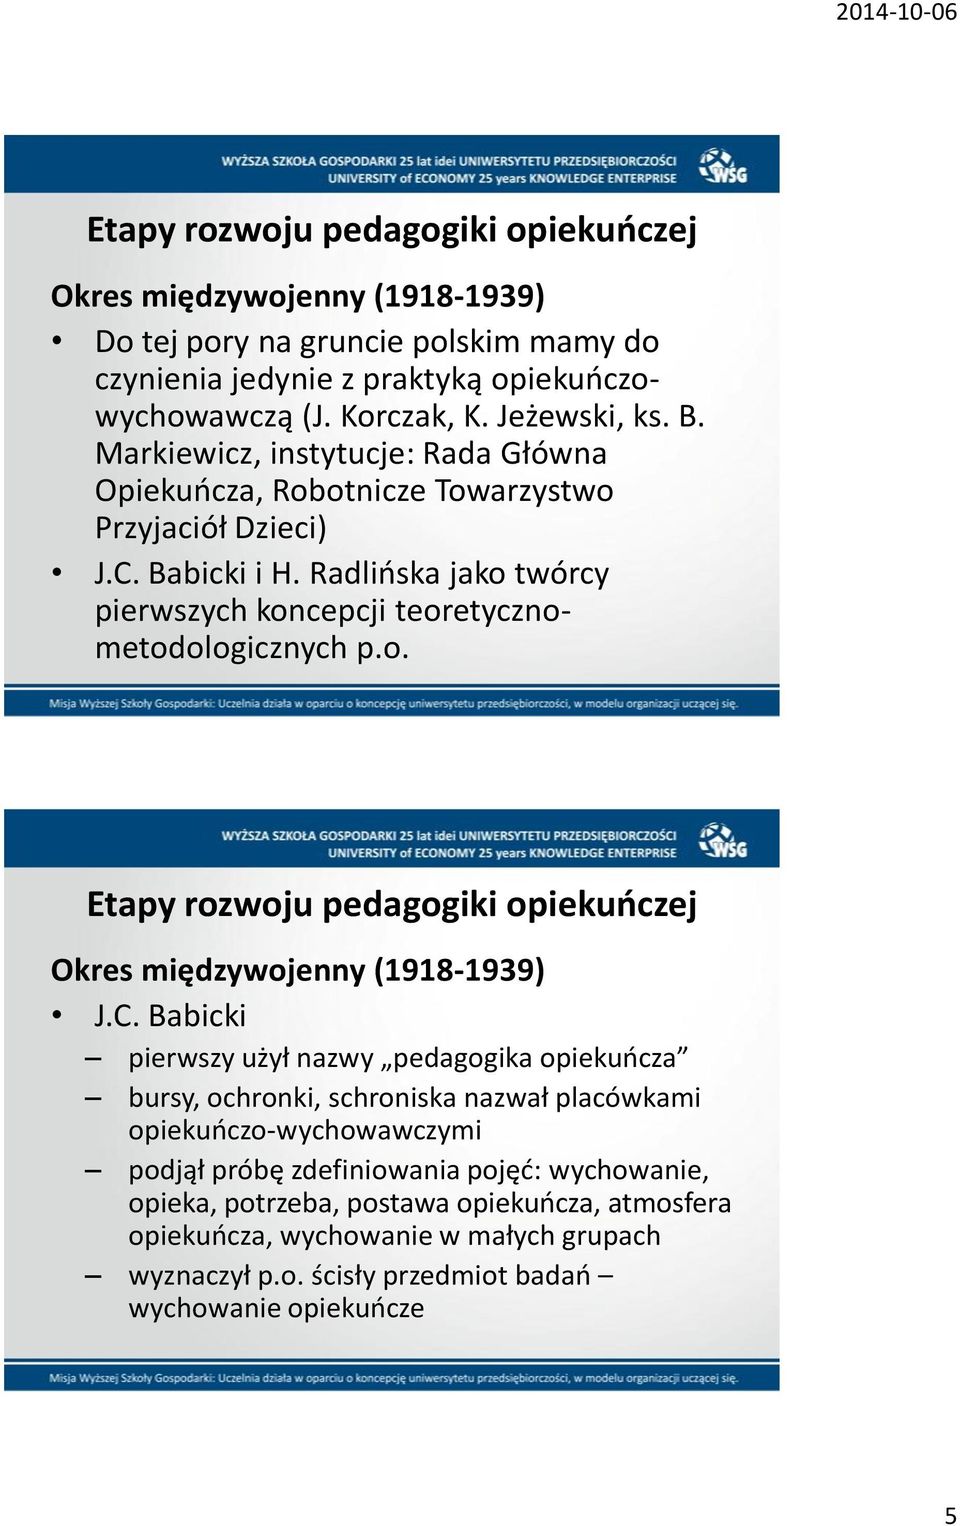 Radlioska jako twórcy pierwszych koncepcji teoretycznometodologicznych p.o. Okres międzywojenny (1918-1939) J.C.